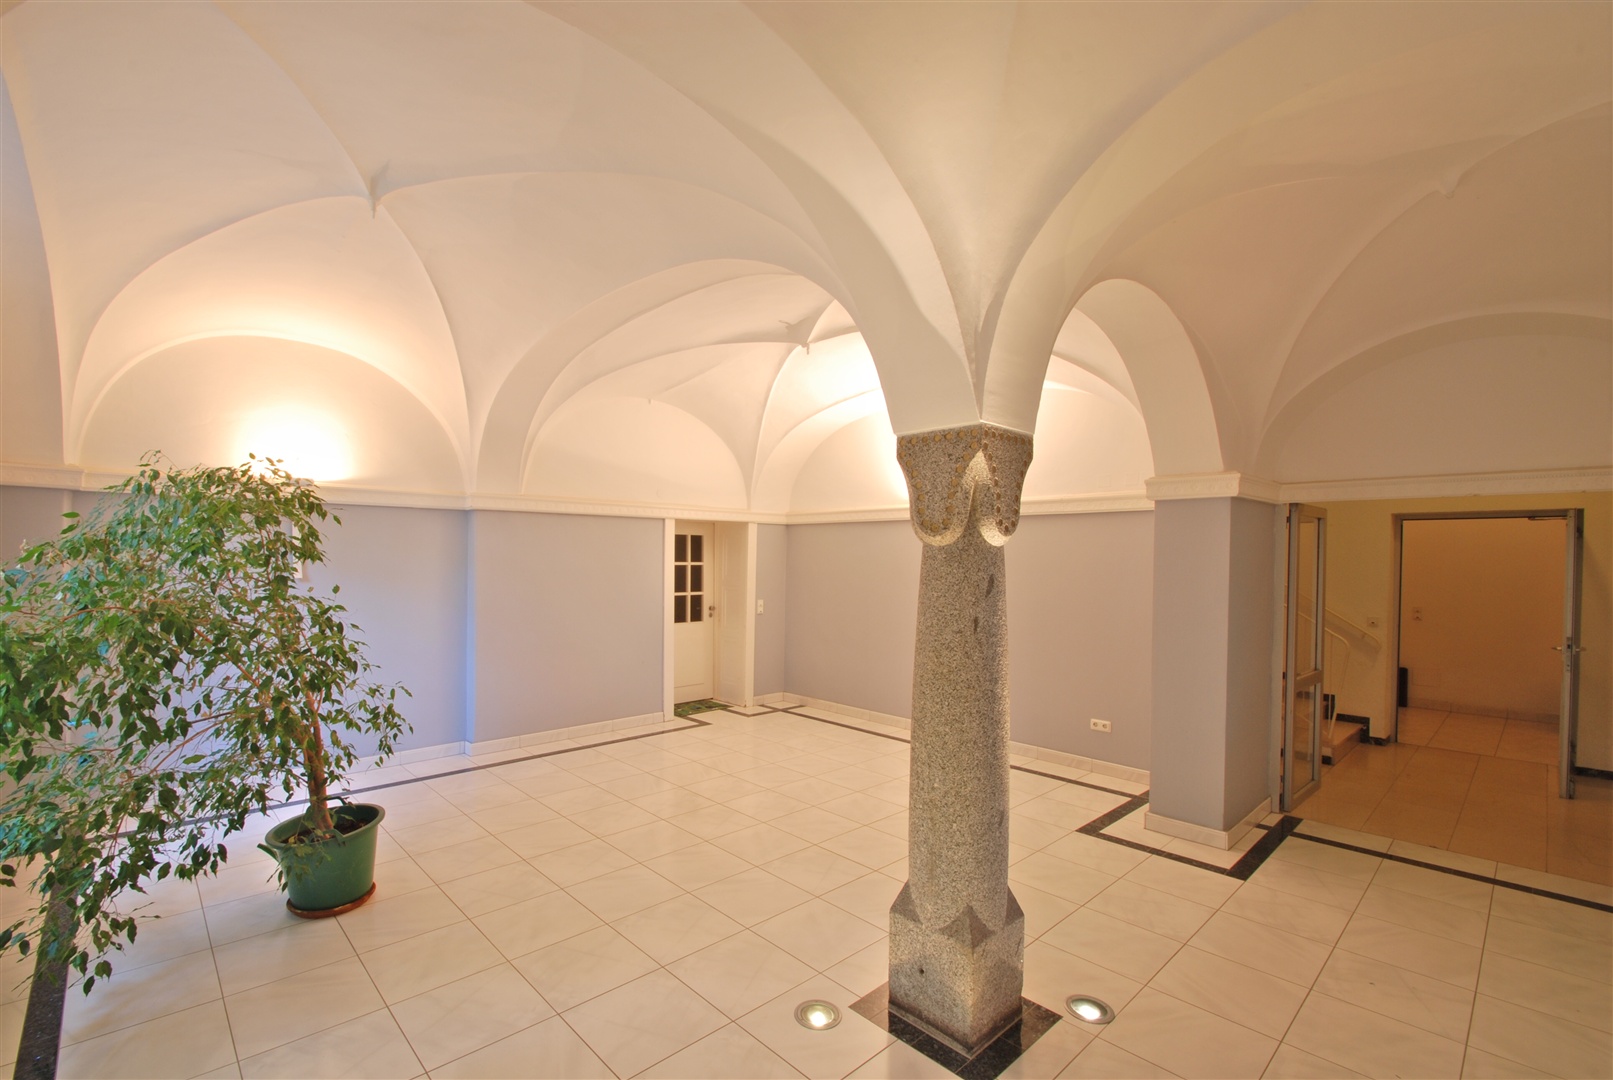 Repräsentative Eingangshalle für die Hausgemeinschaft und ihre Besucher - Oliver Reifferscheid - Immobilienmakler Darmstadt